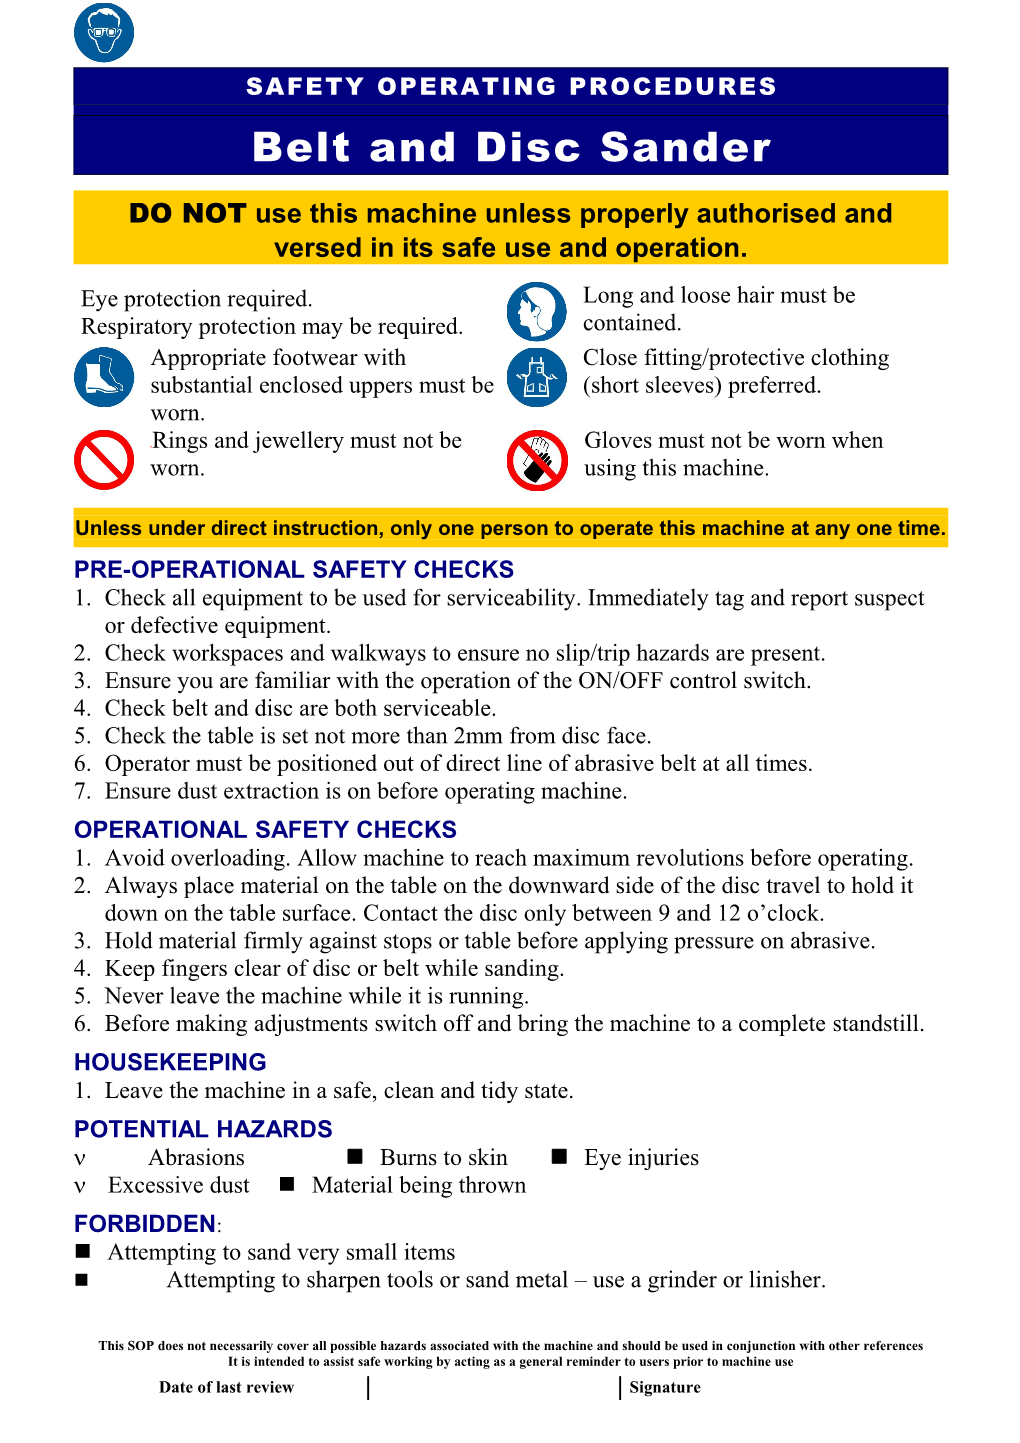 Safety Operating Procedures - Belt Disc Sander